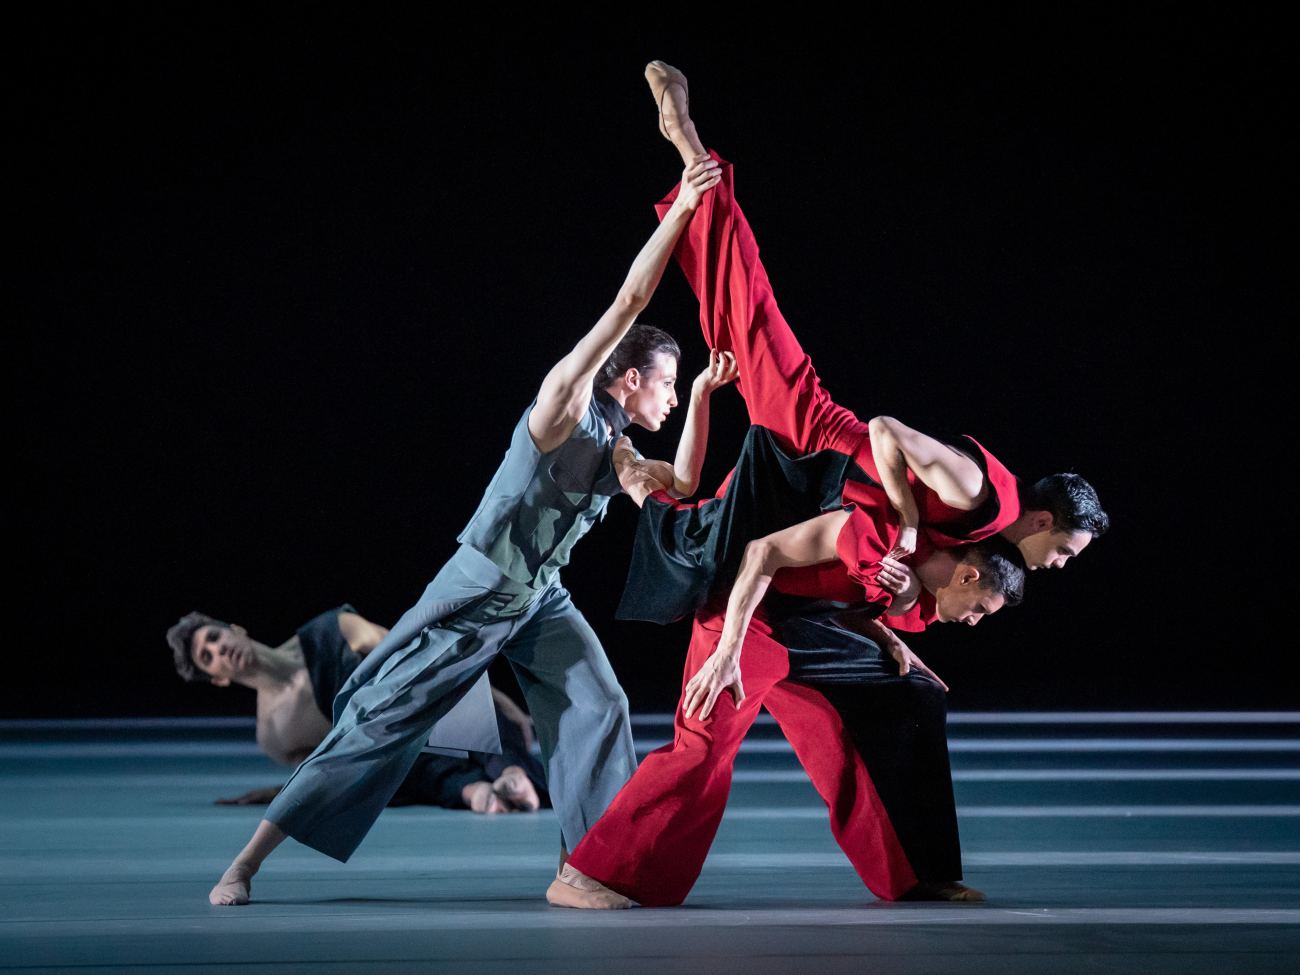 15. F.Costa, G.Cusin, G.Li Mandri, and J.G.Cabrera, “Die Jahreszeiten” by M.Schläpfer, Vienna State Ballet 2022 © Vienna State Ballet / A.Taylor